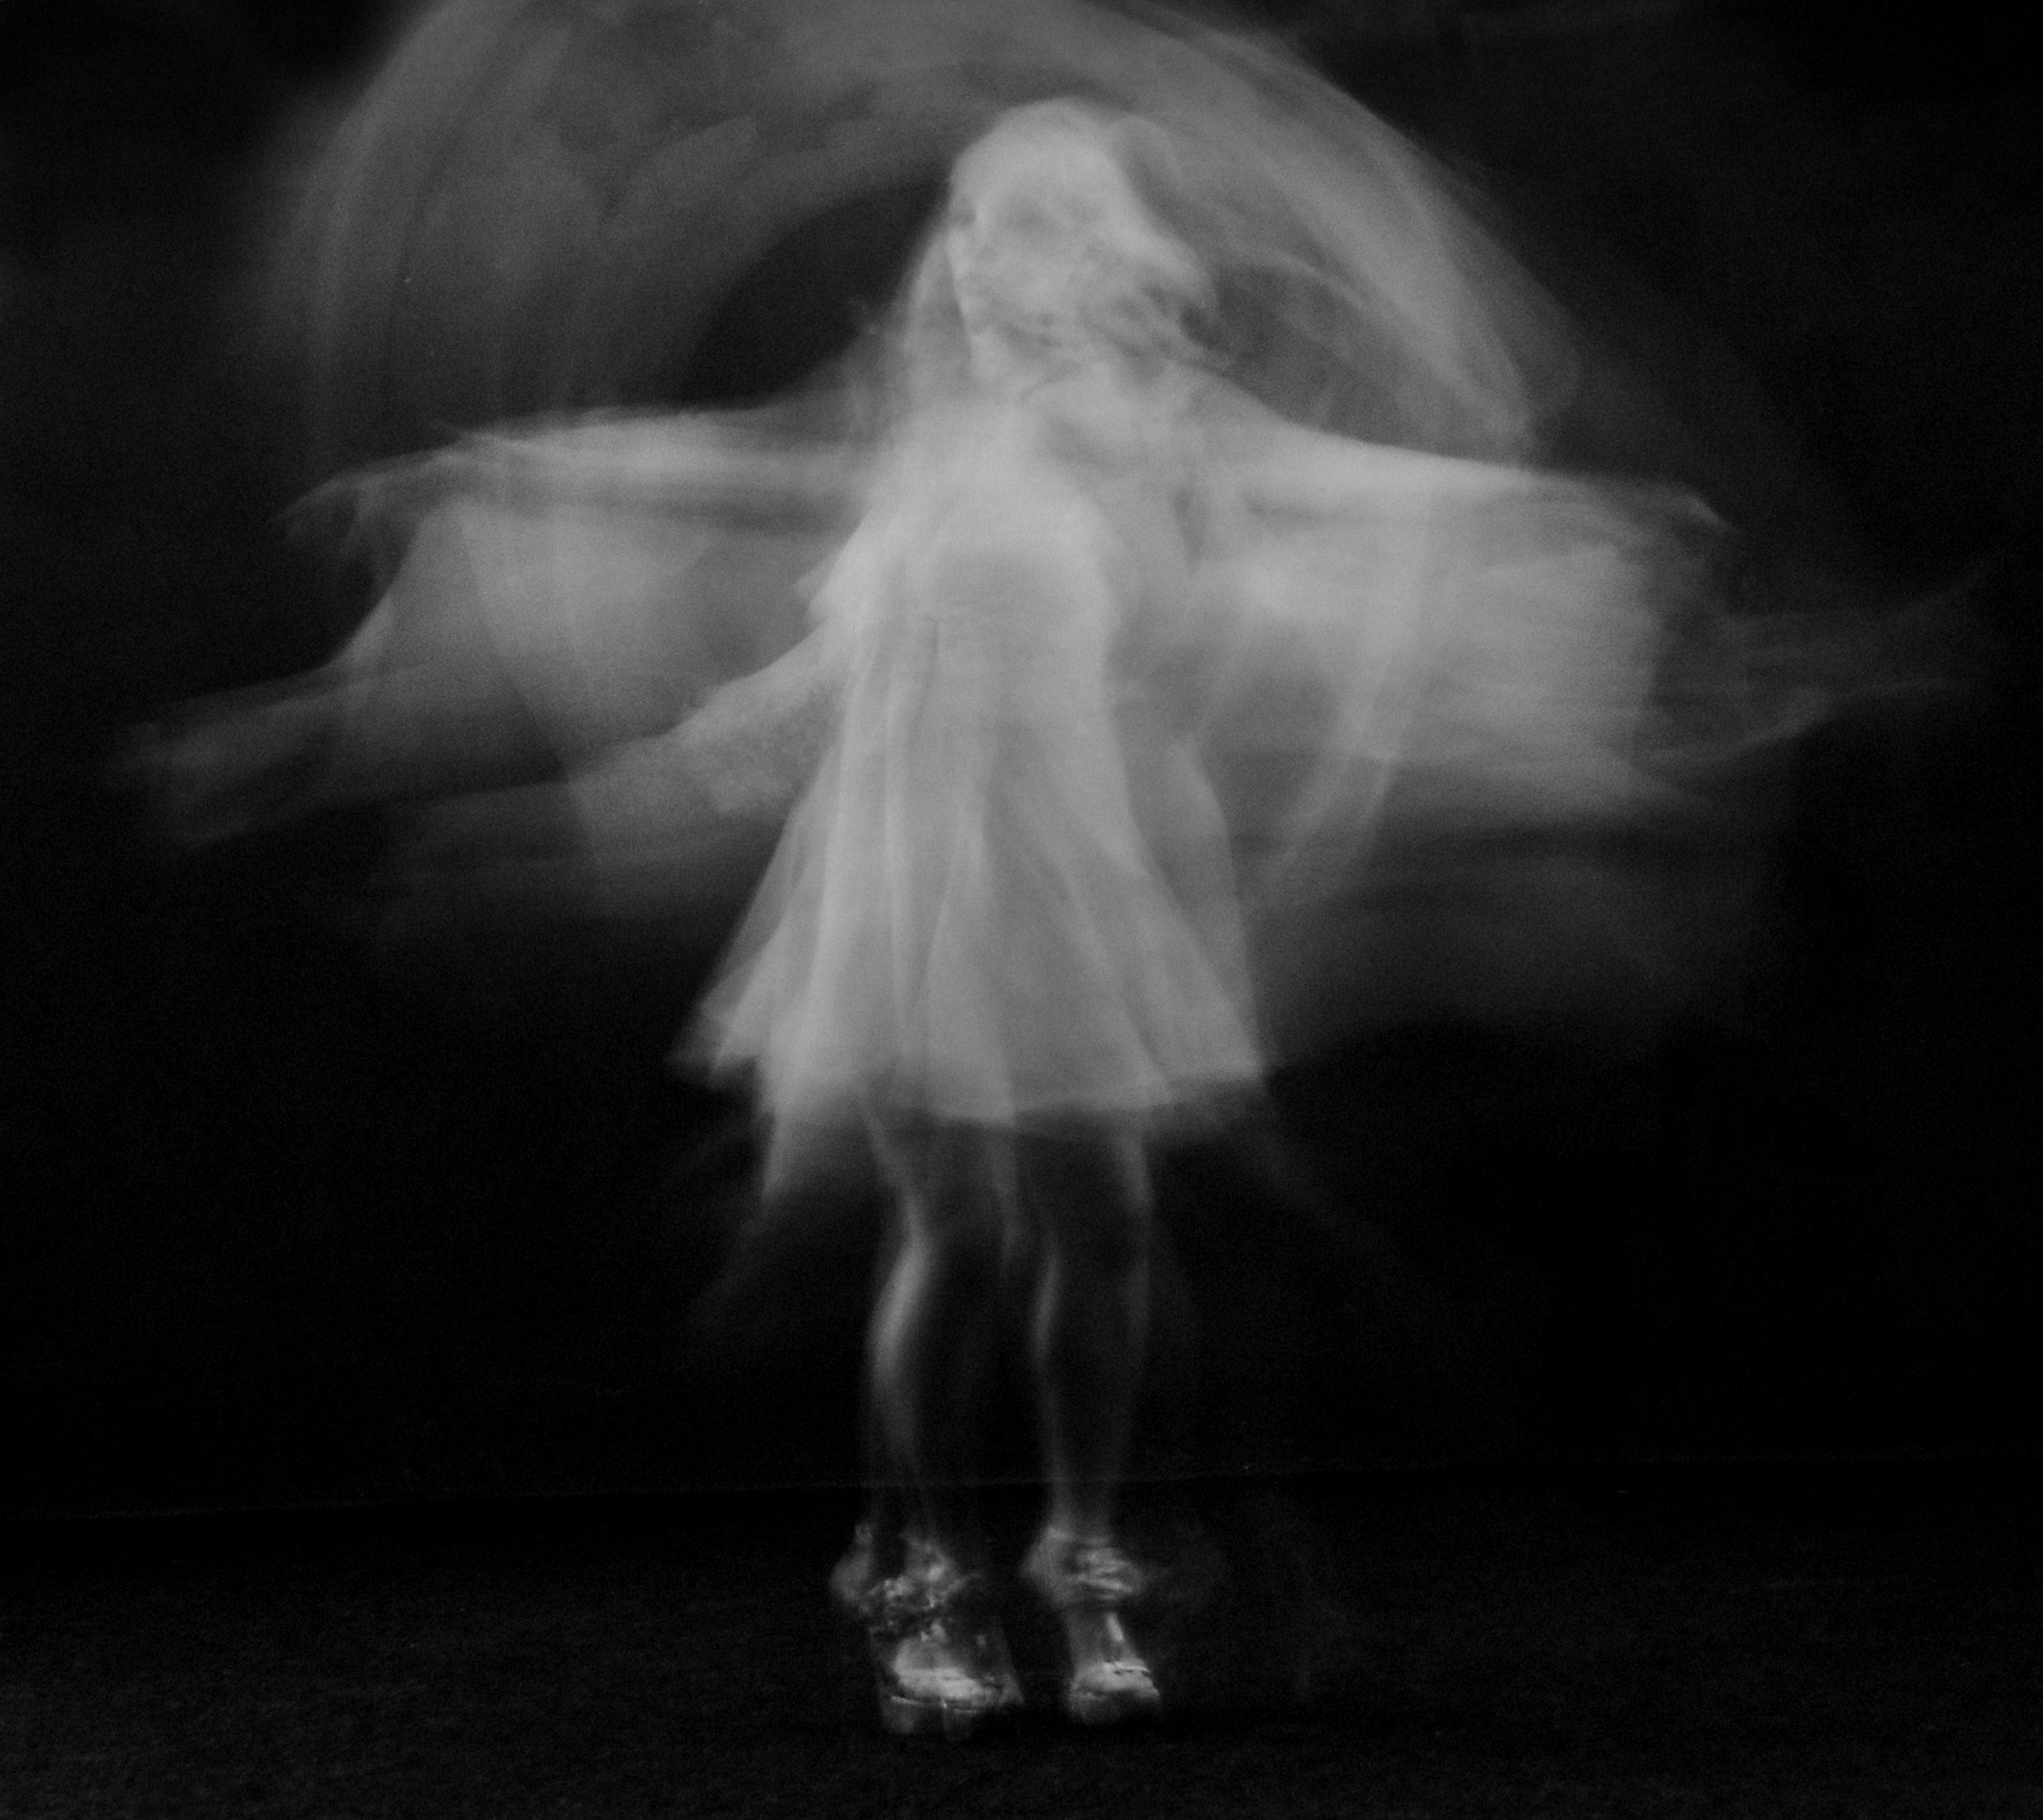 art-ballet-dancer-black-background-1231258.jpg